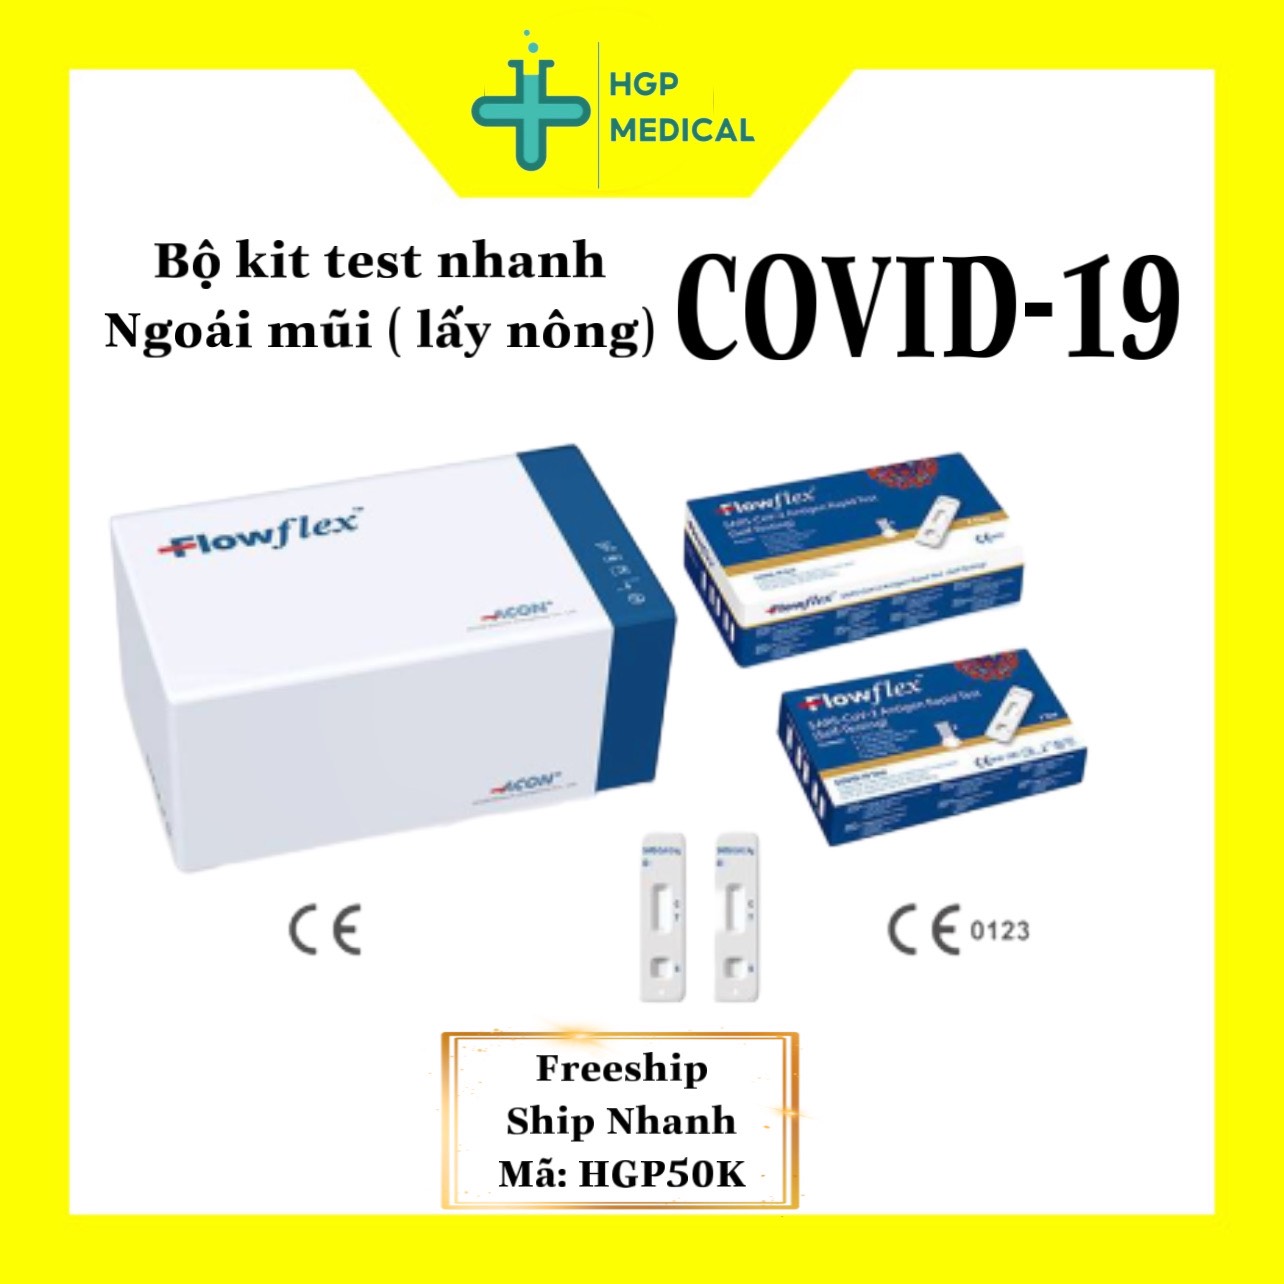 Dụng cụ xét nghiệm nhanh Test Kit COVID-19 Flowflex (Hộp 25 bộ kit) - Hàng chính hãng